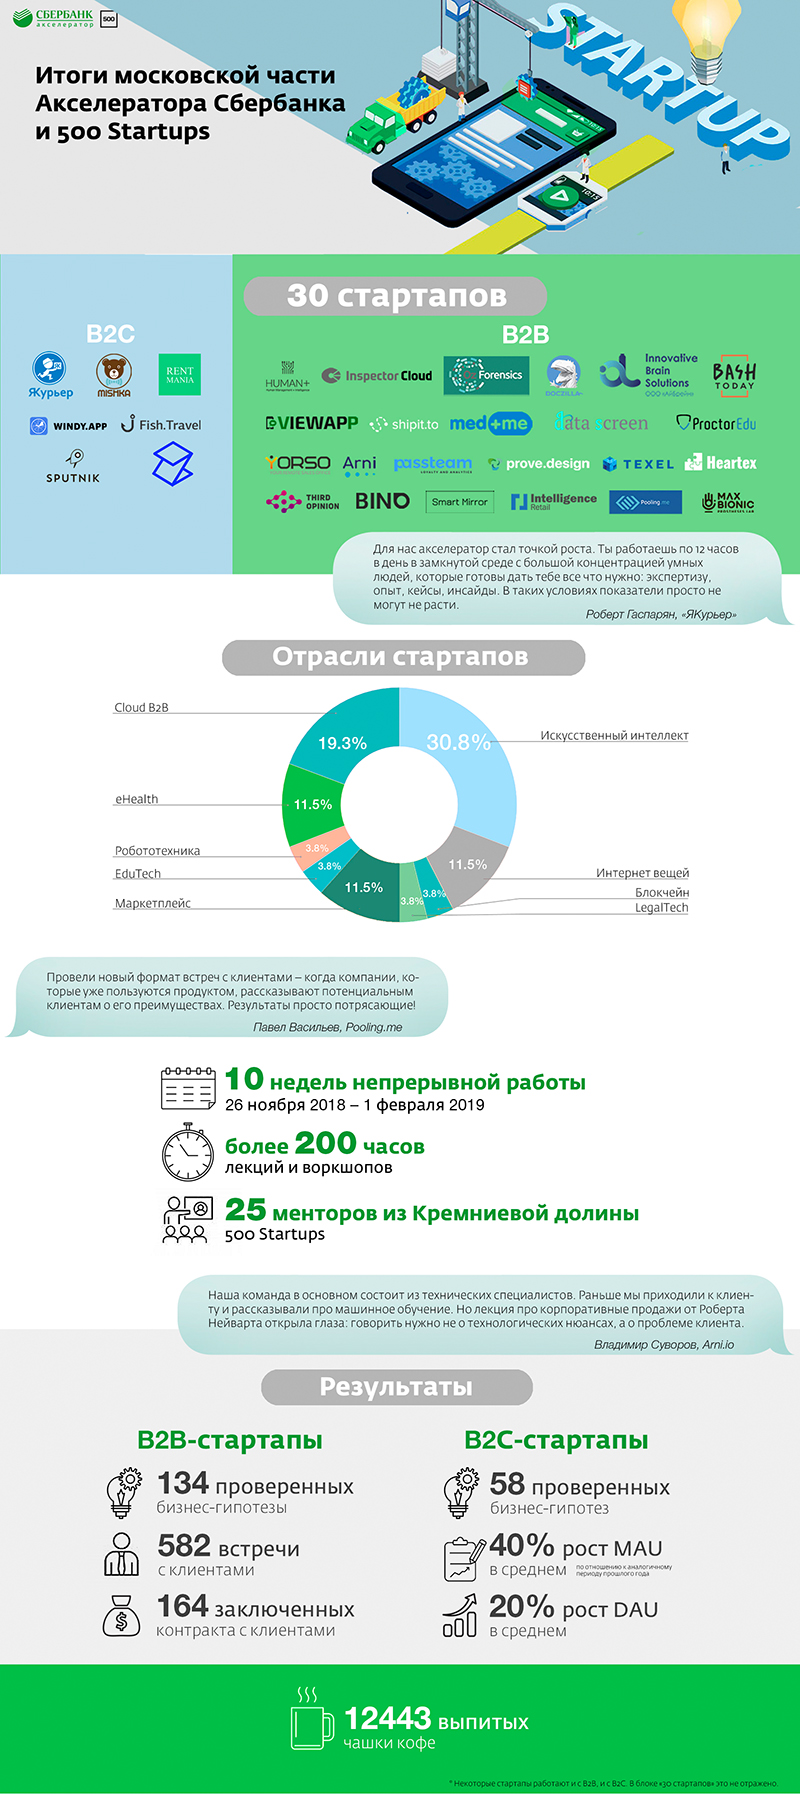 российский этап совместного акселератора Сбербанка и 500 Startups - инфографика